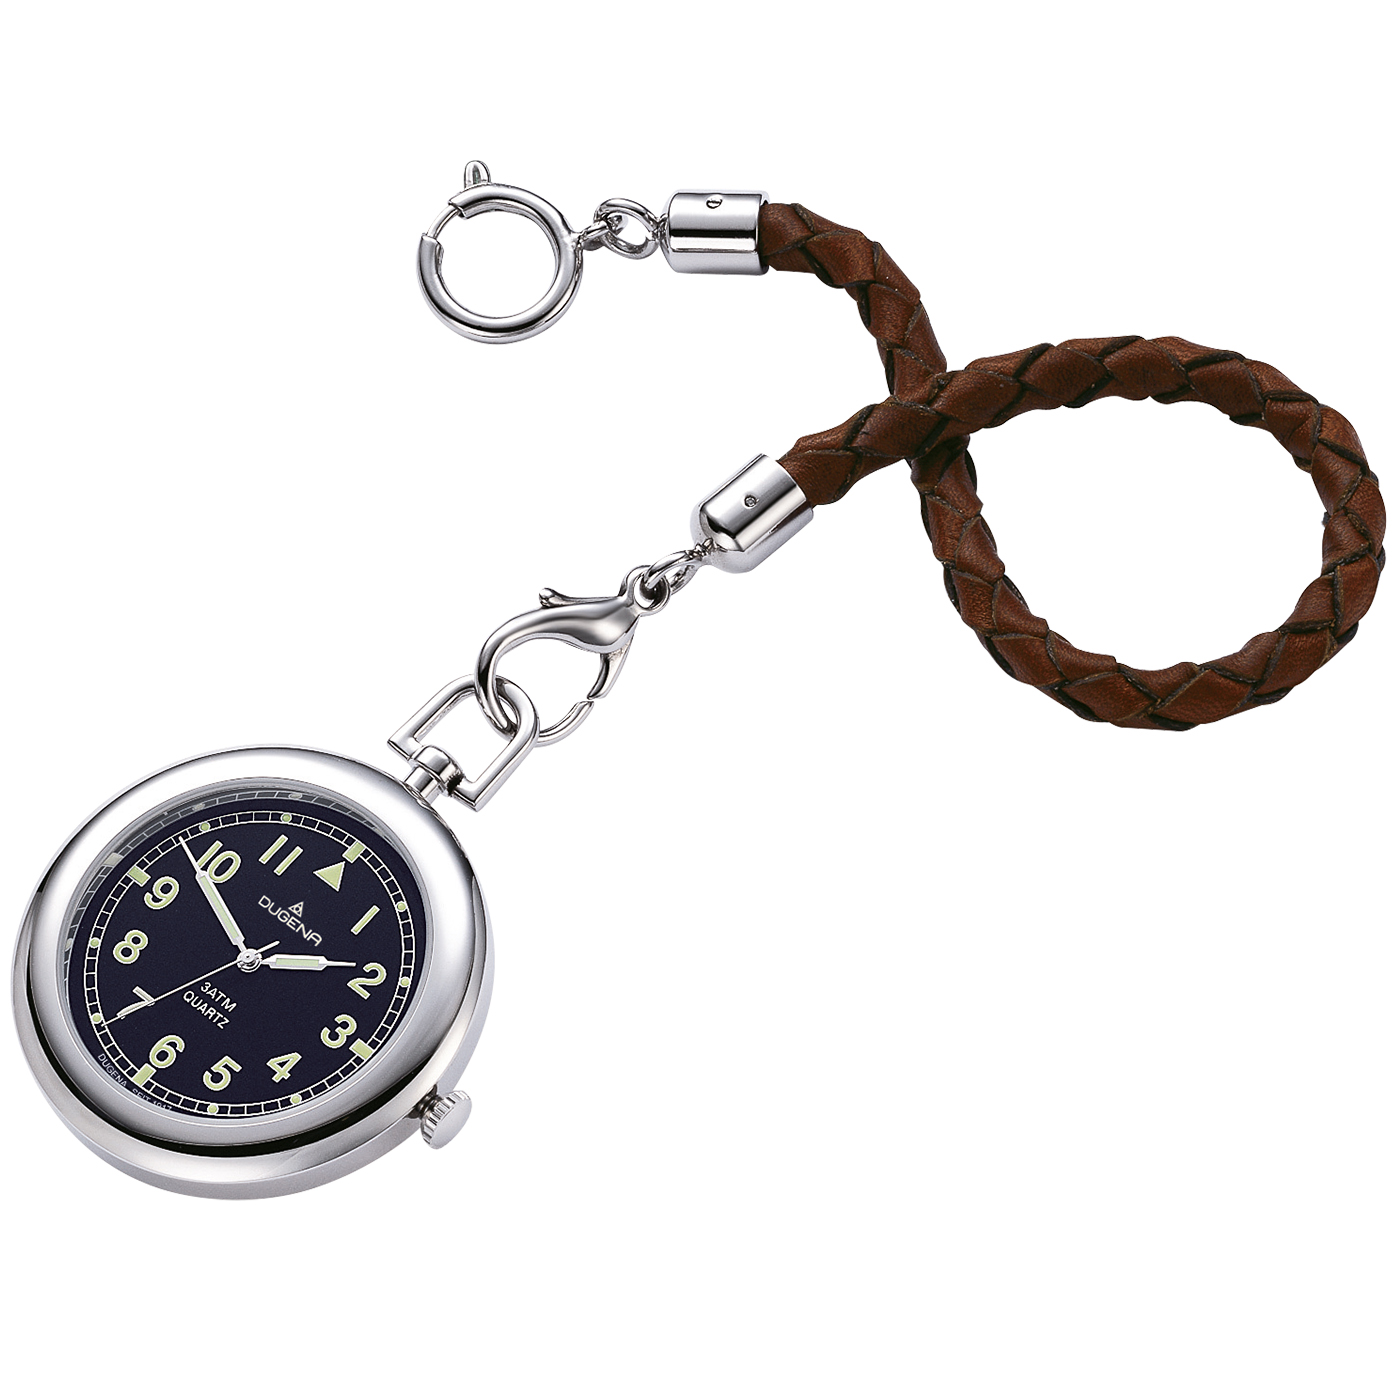 Pocket watch Lepine 4149874-1 Quartz